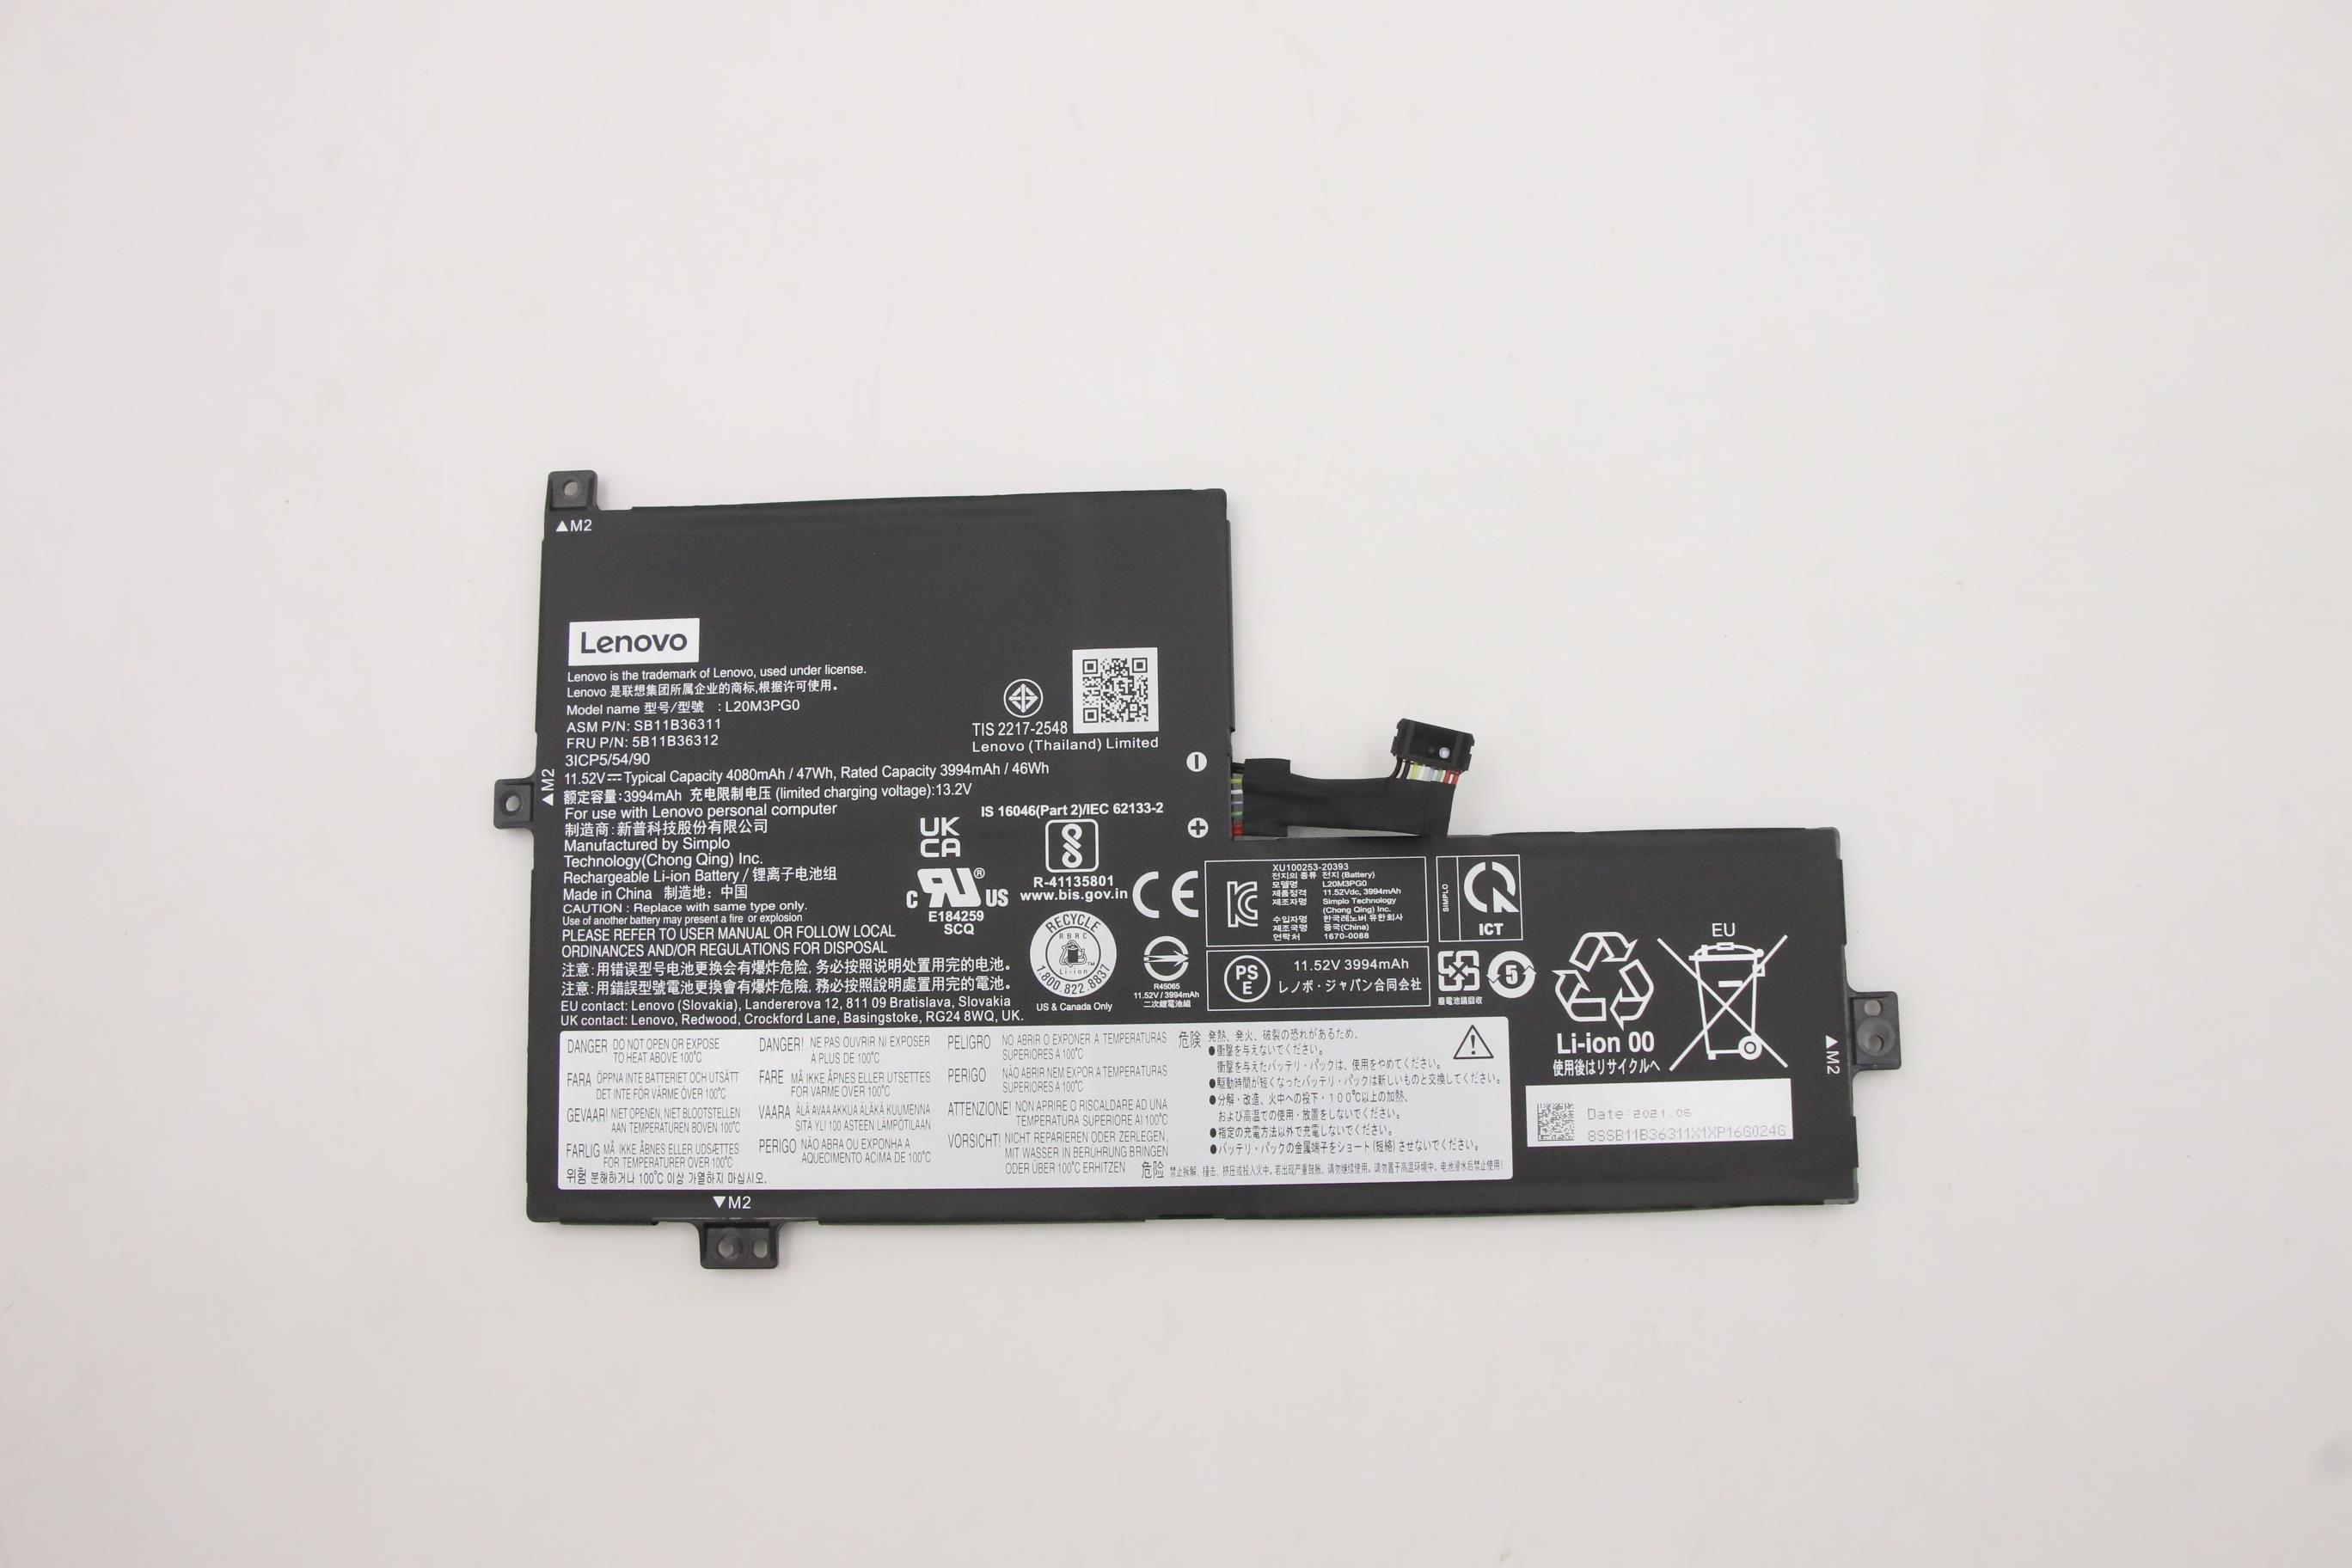 Lenovo 300e Chromebook Gen 3 BATTERY - 5B11B36312